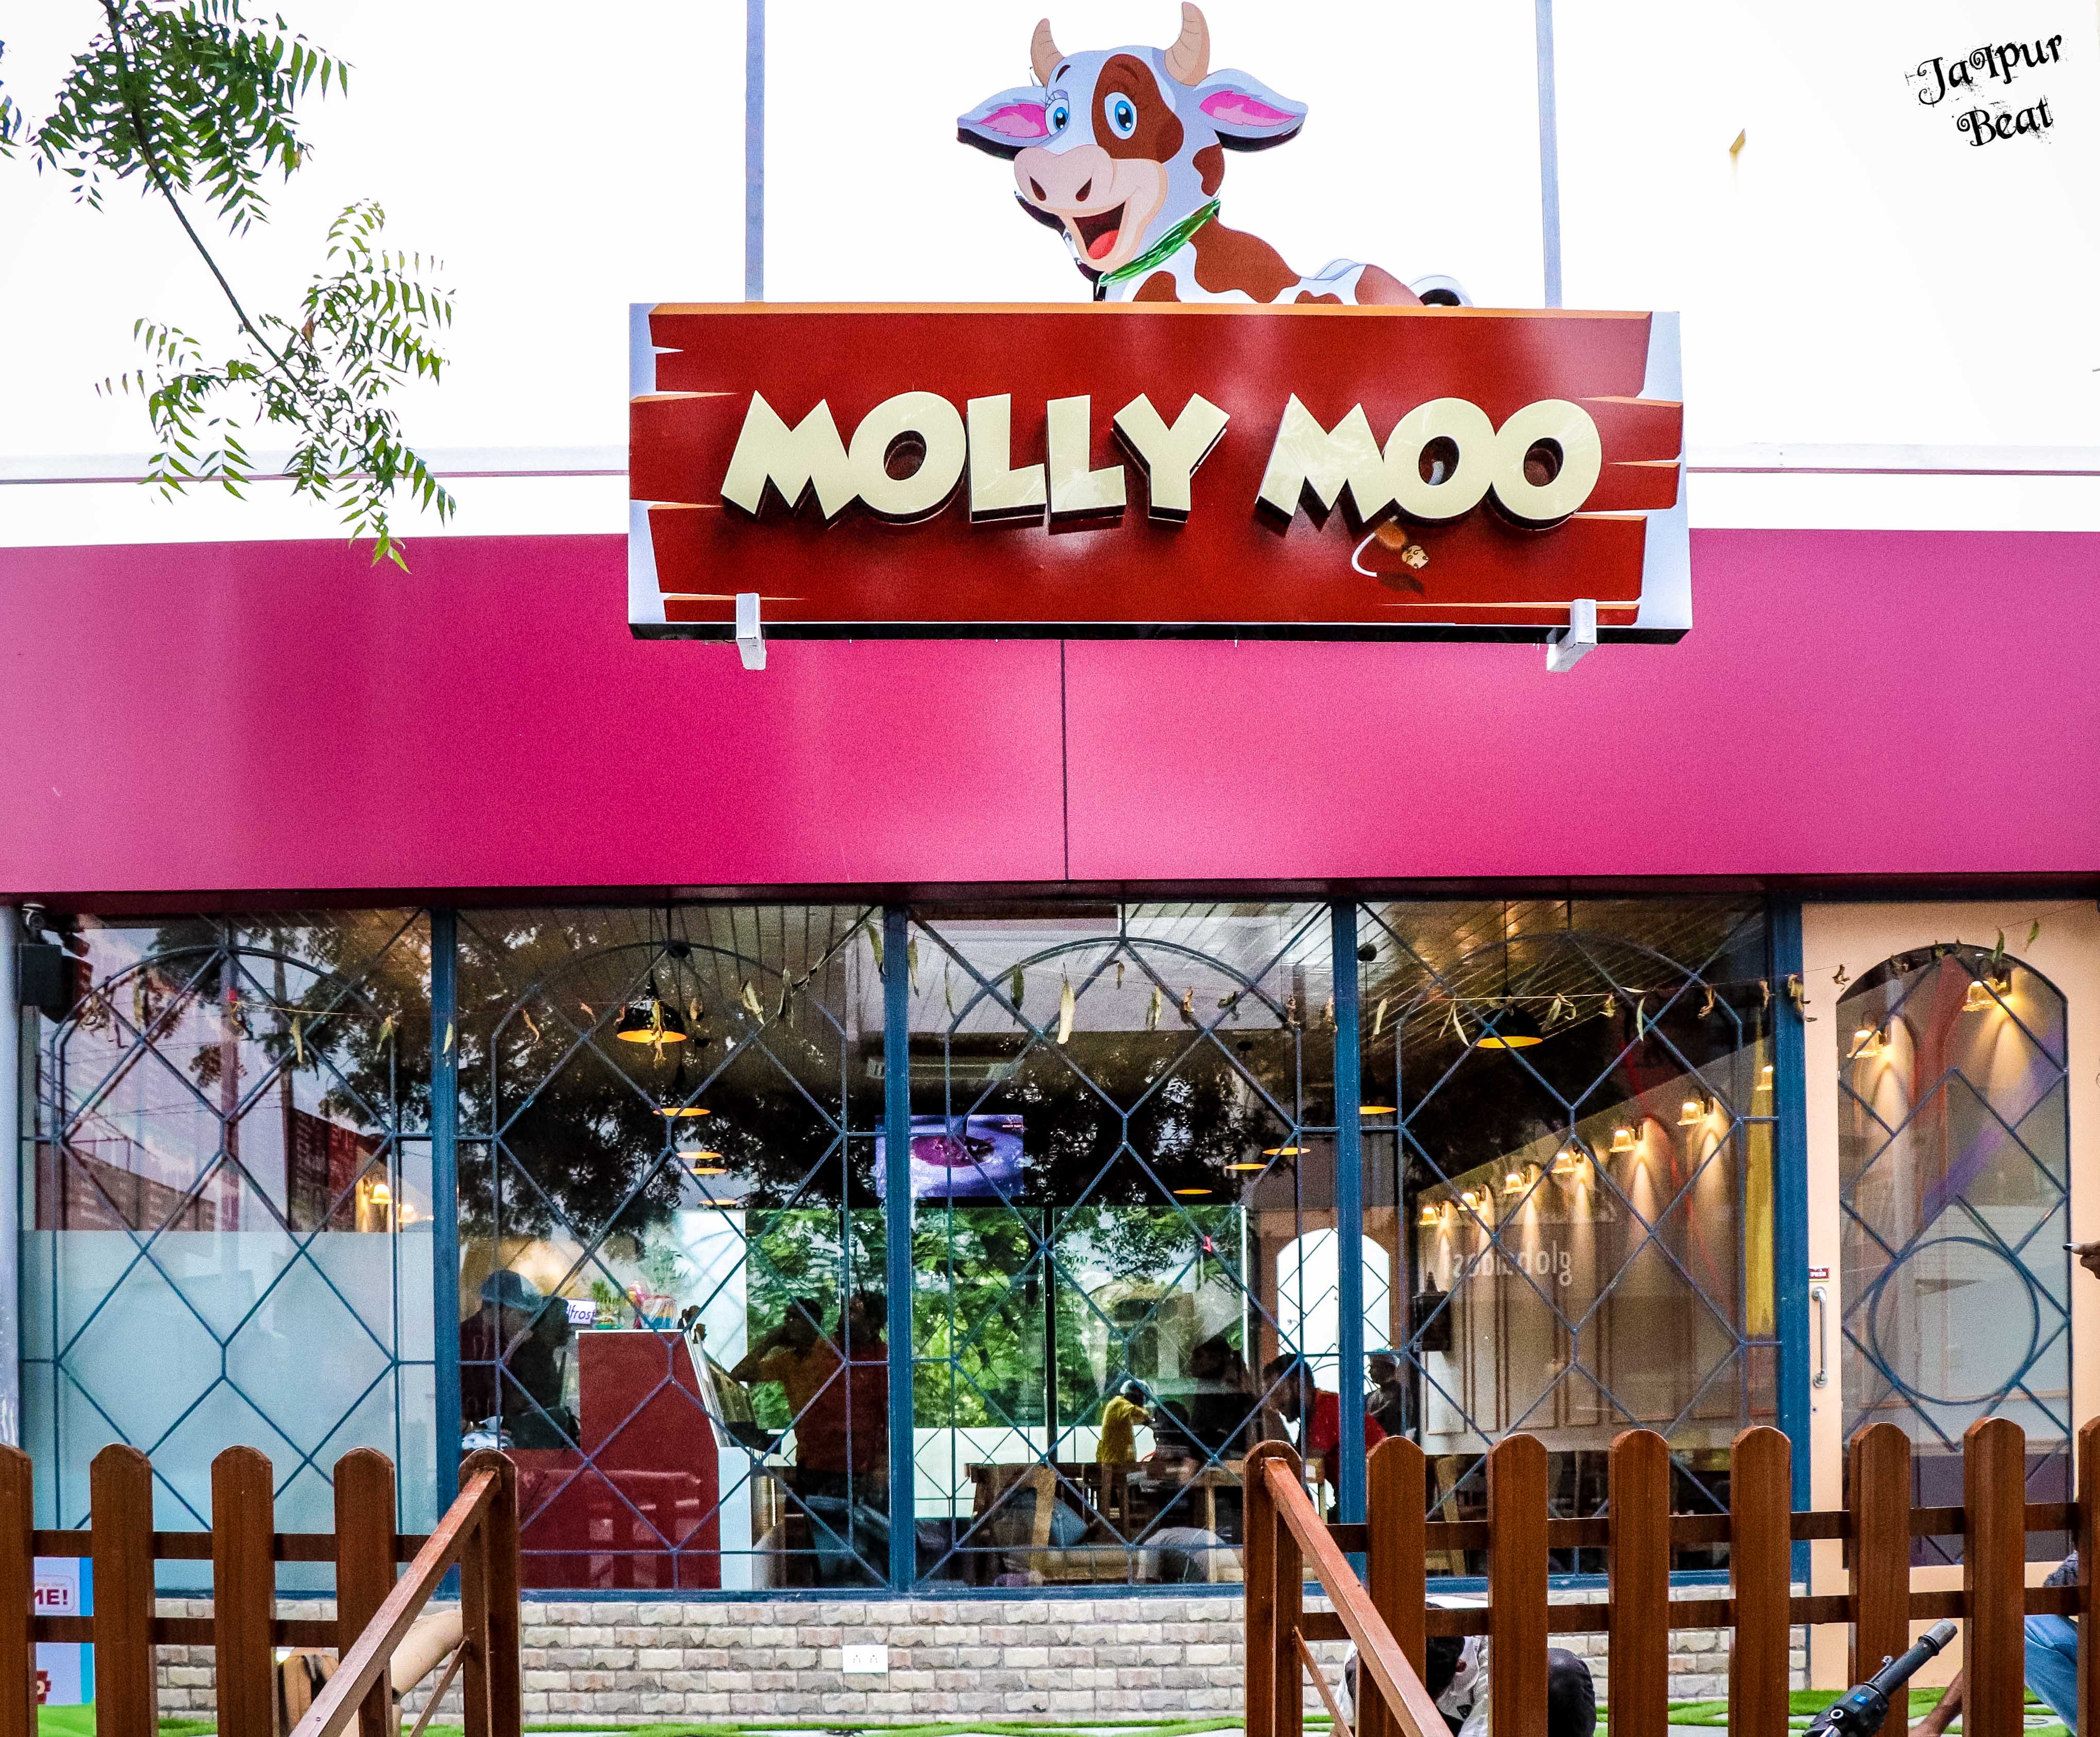 Molly Moo